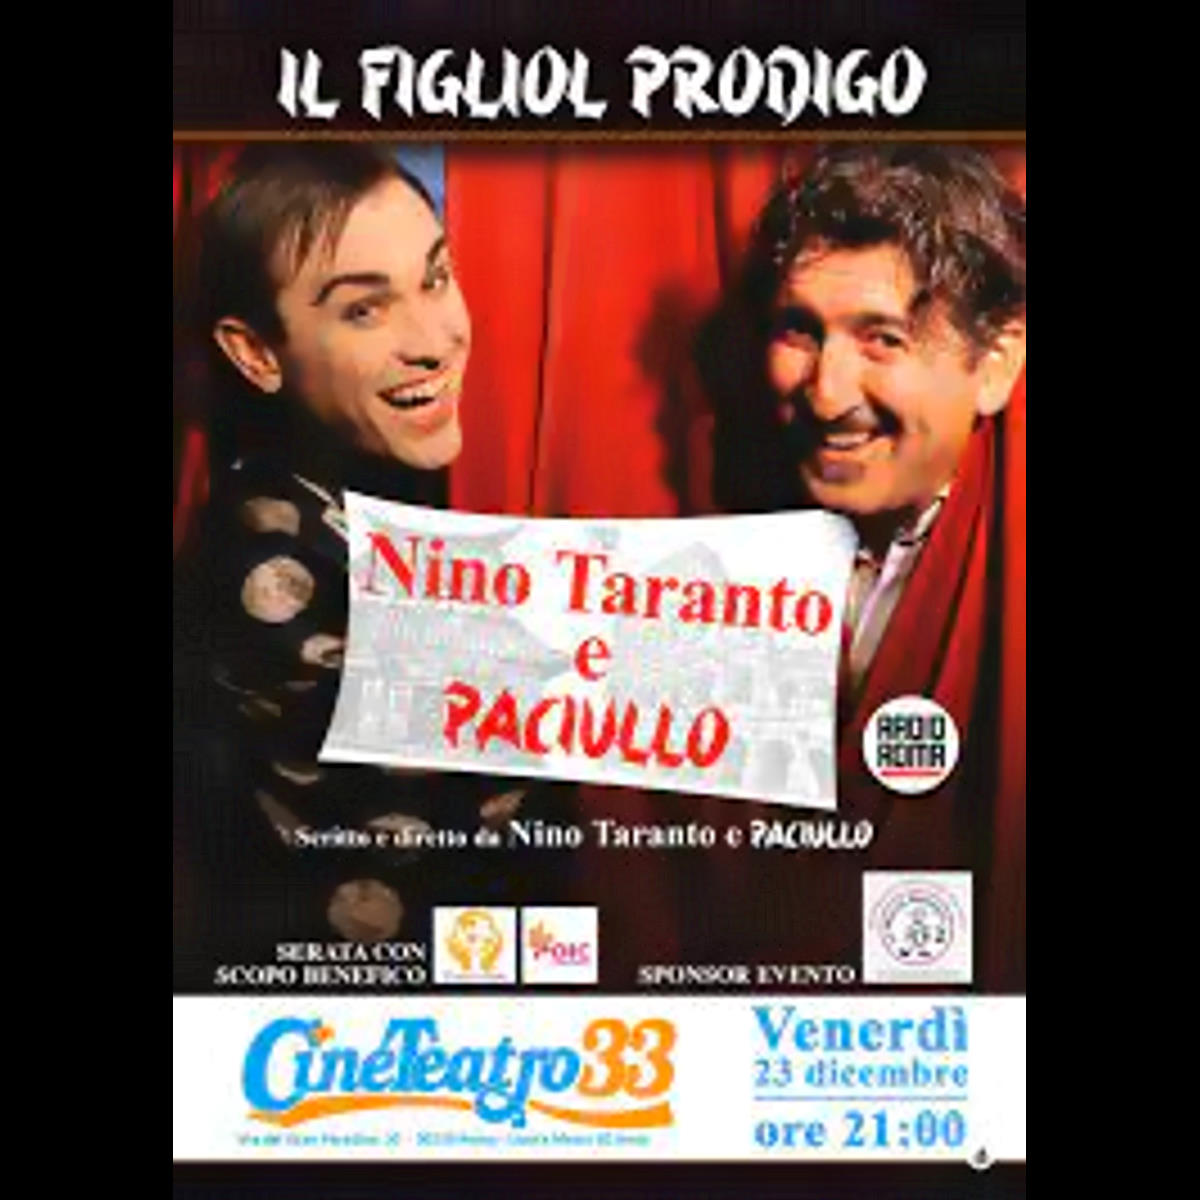 Paciullo e Nino Taranto tornano con il Figliol prodigo 3.0 al Cineteatro 33 a Roma a scopo benefico